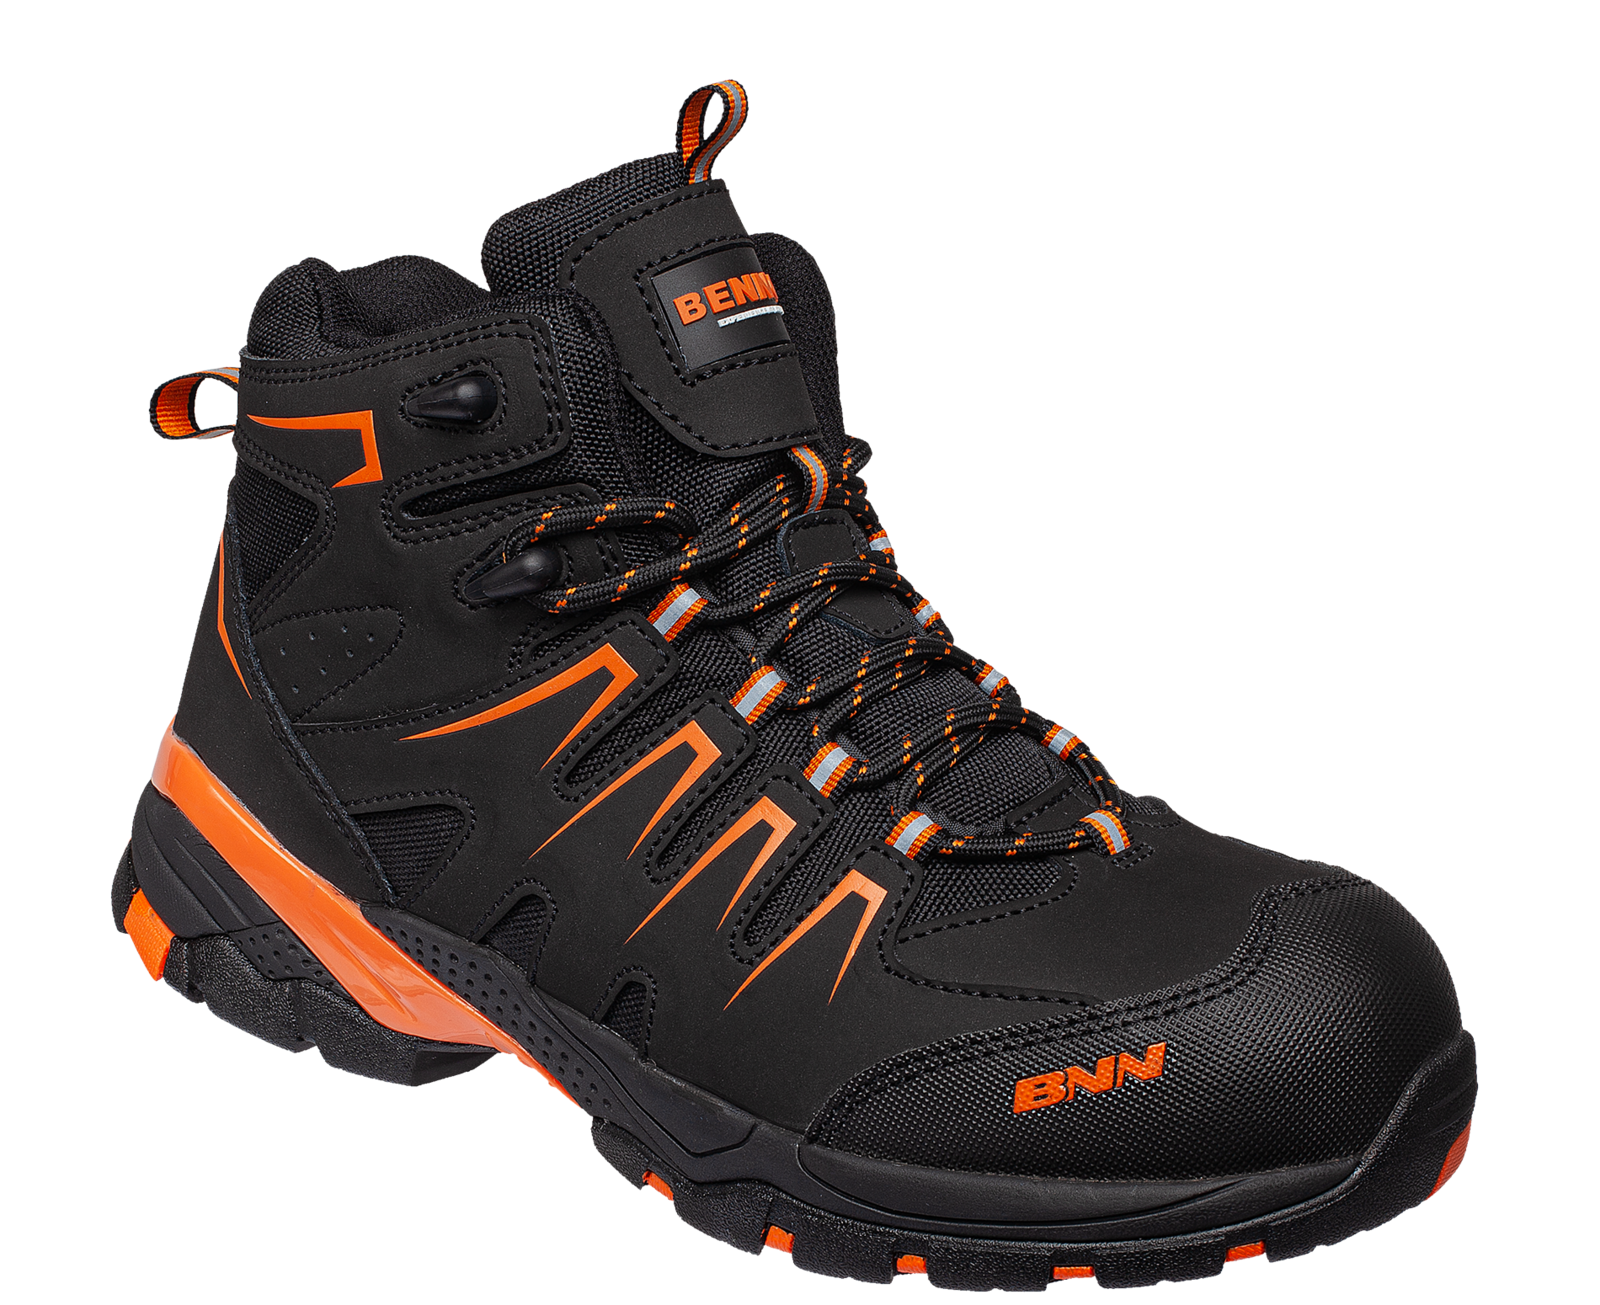 Bezpečnostná členková obuv Bennon Orlando XTR S3 NM High - veľkosť: 45, farba: čierna/oranžová